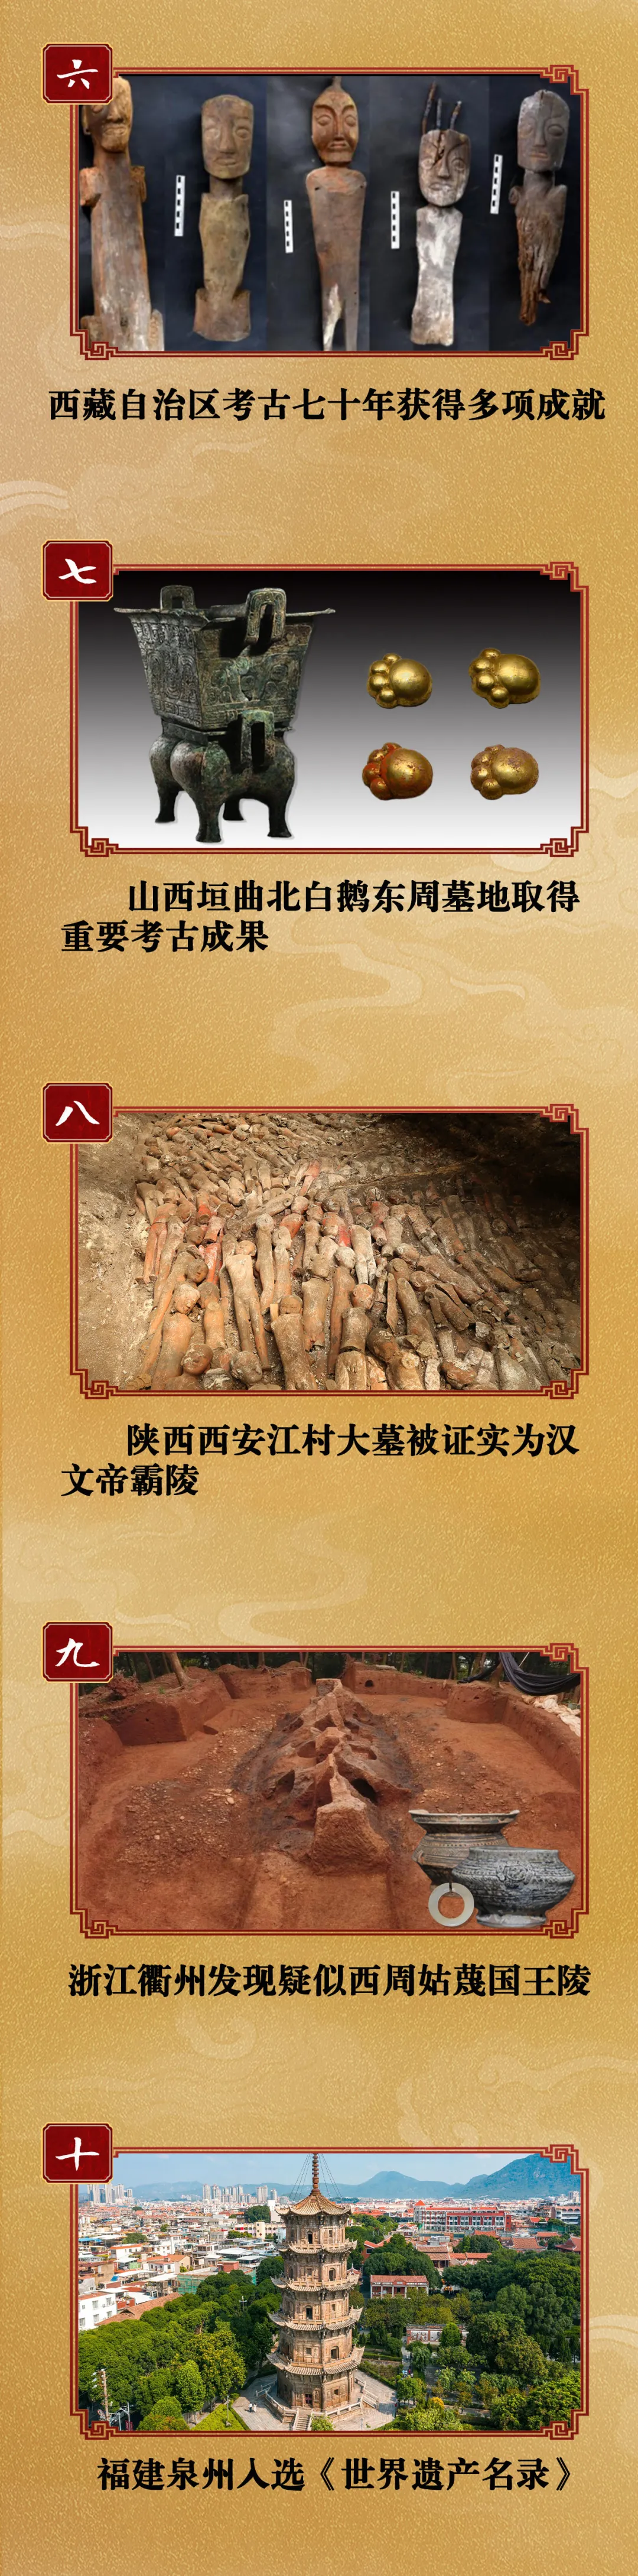 陕西两项考古入选年度国内十大考古新闻